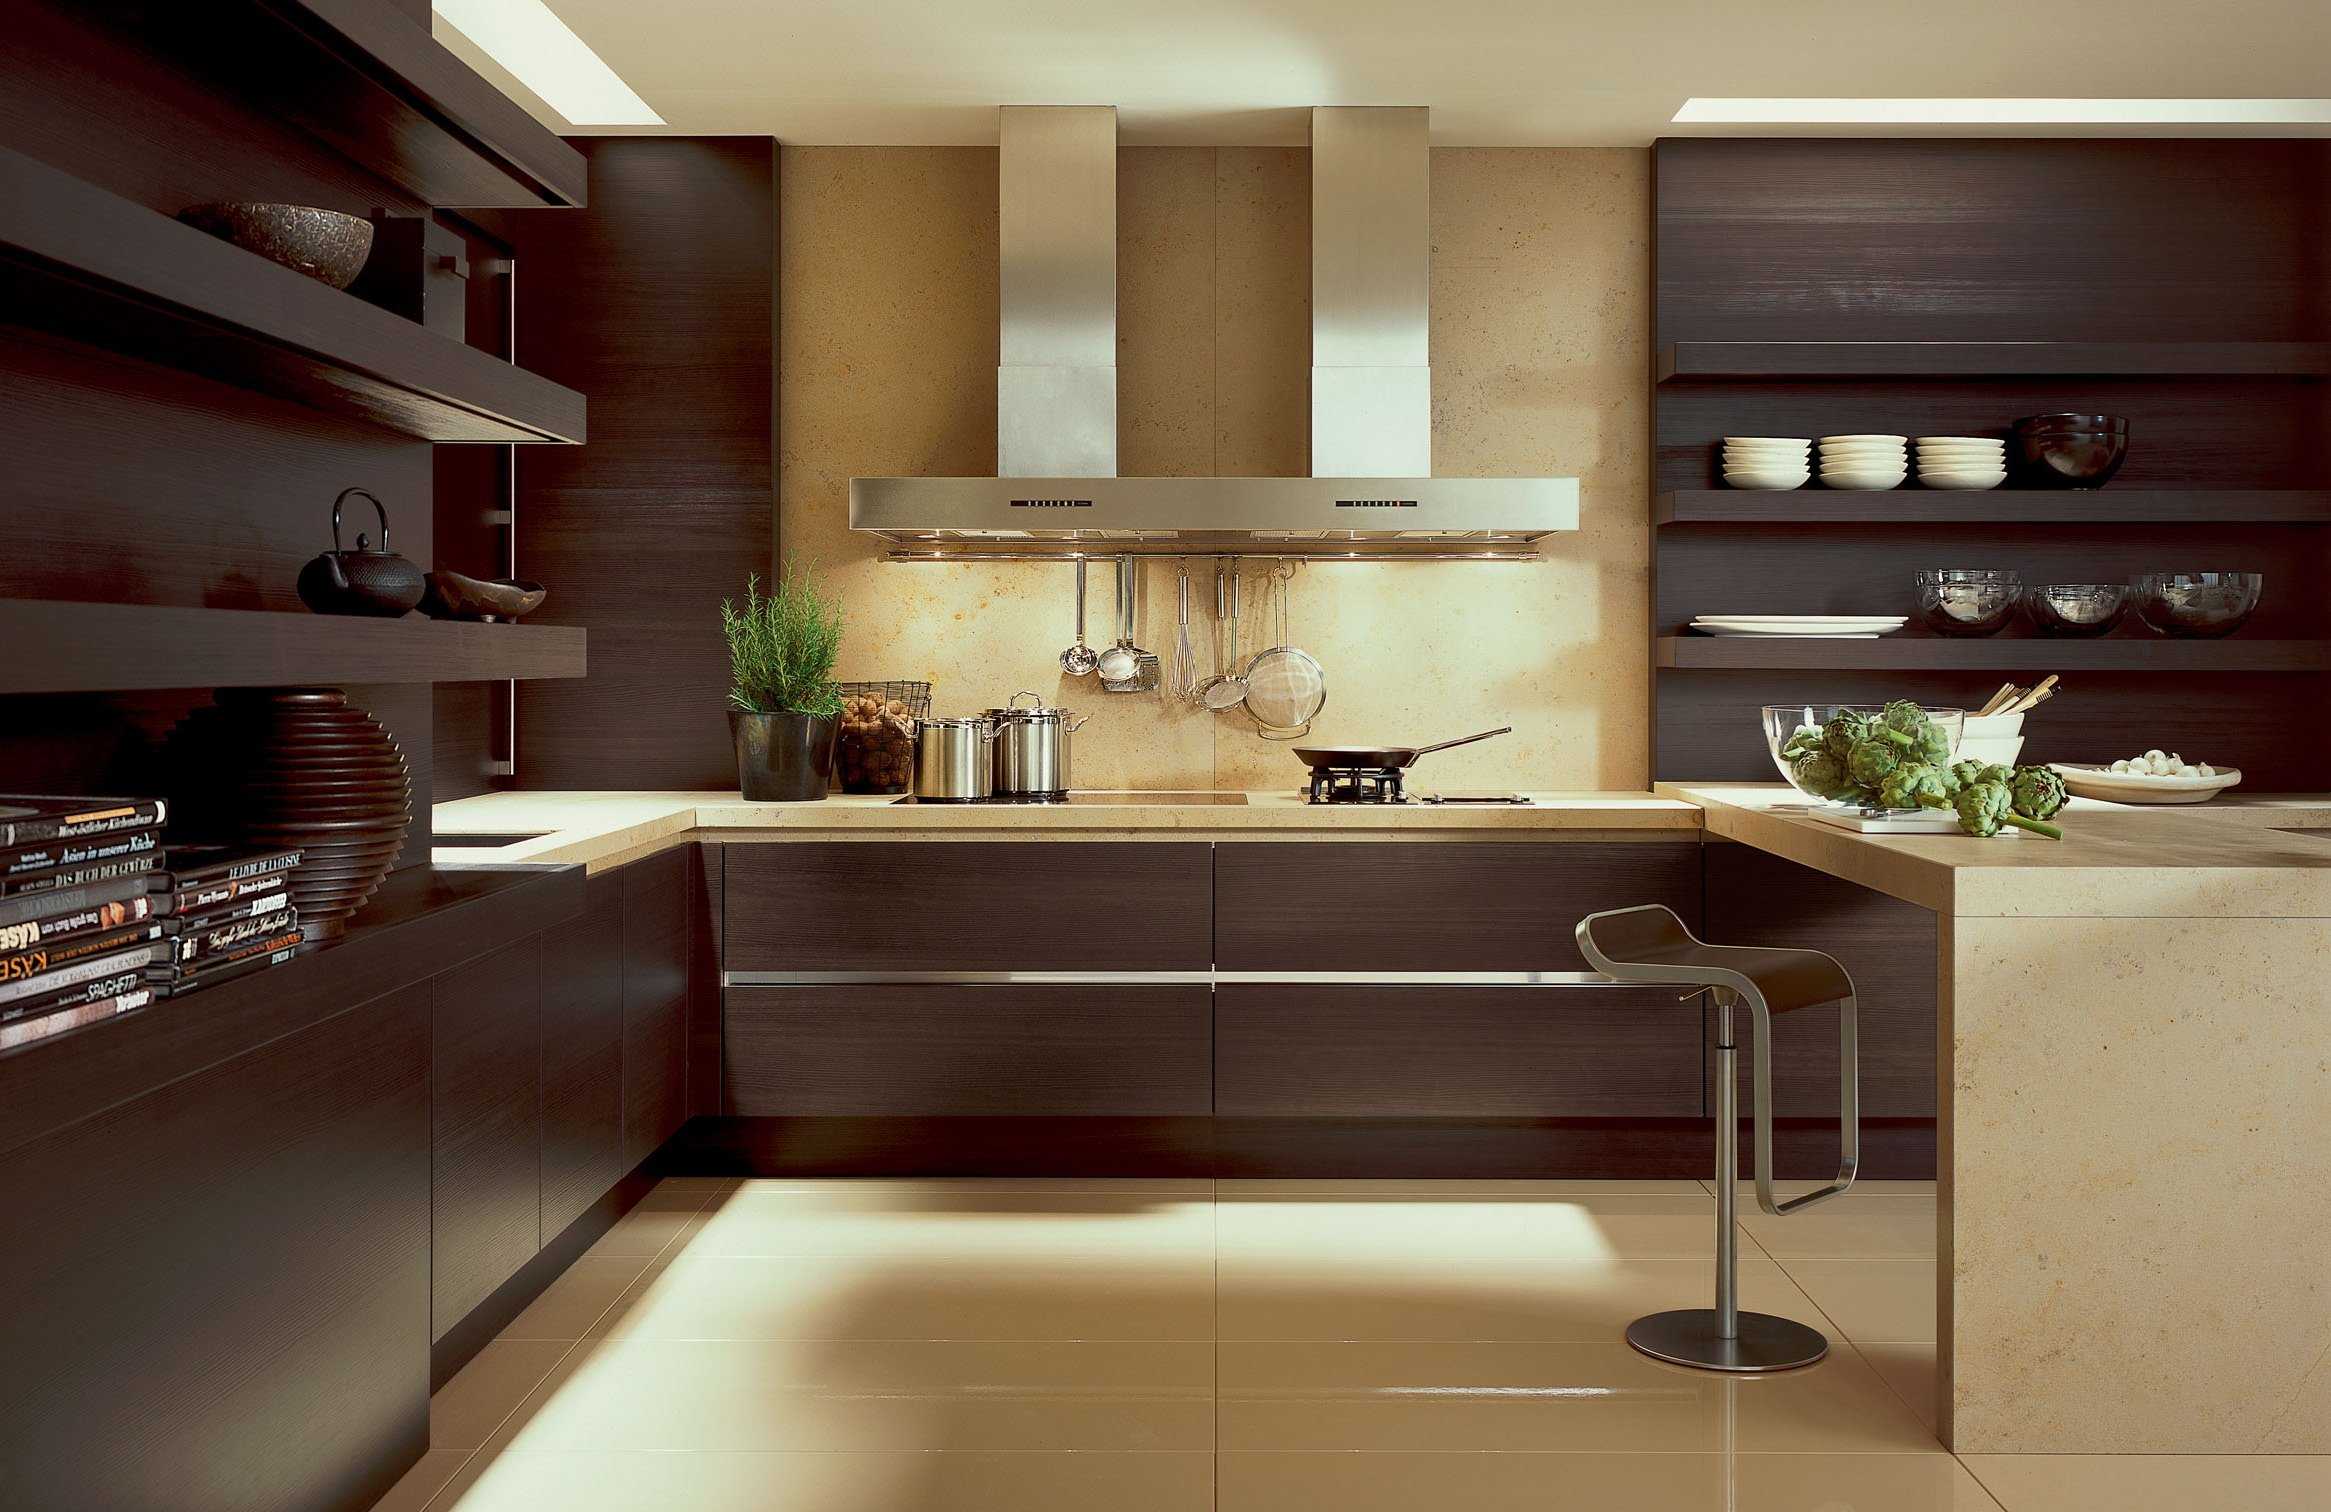 Мебель на кухне дизайн интерьера фото